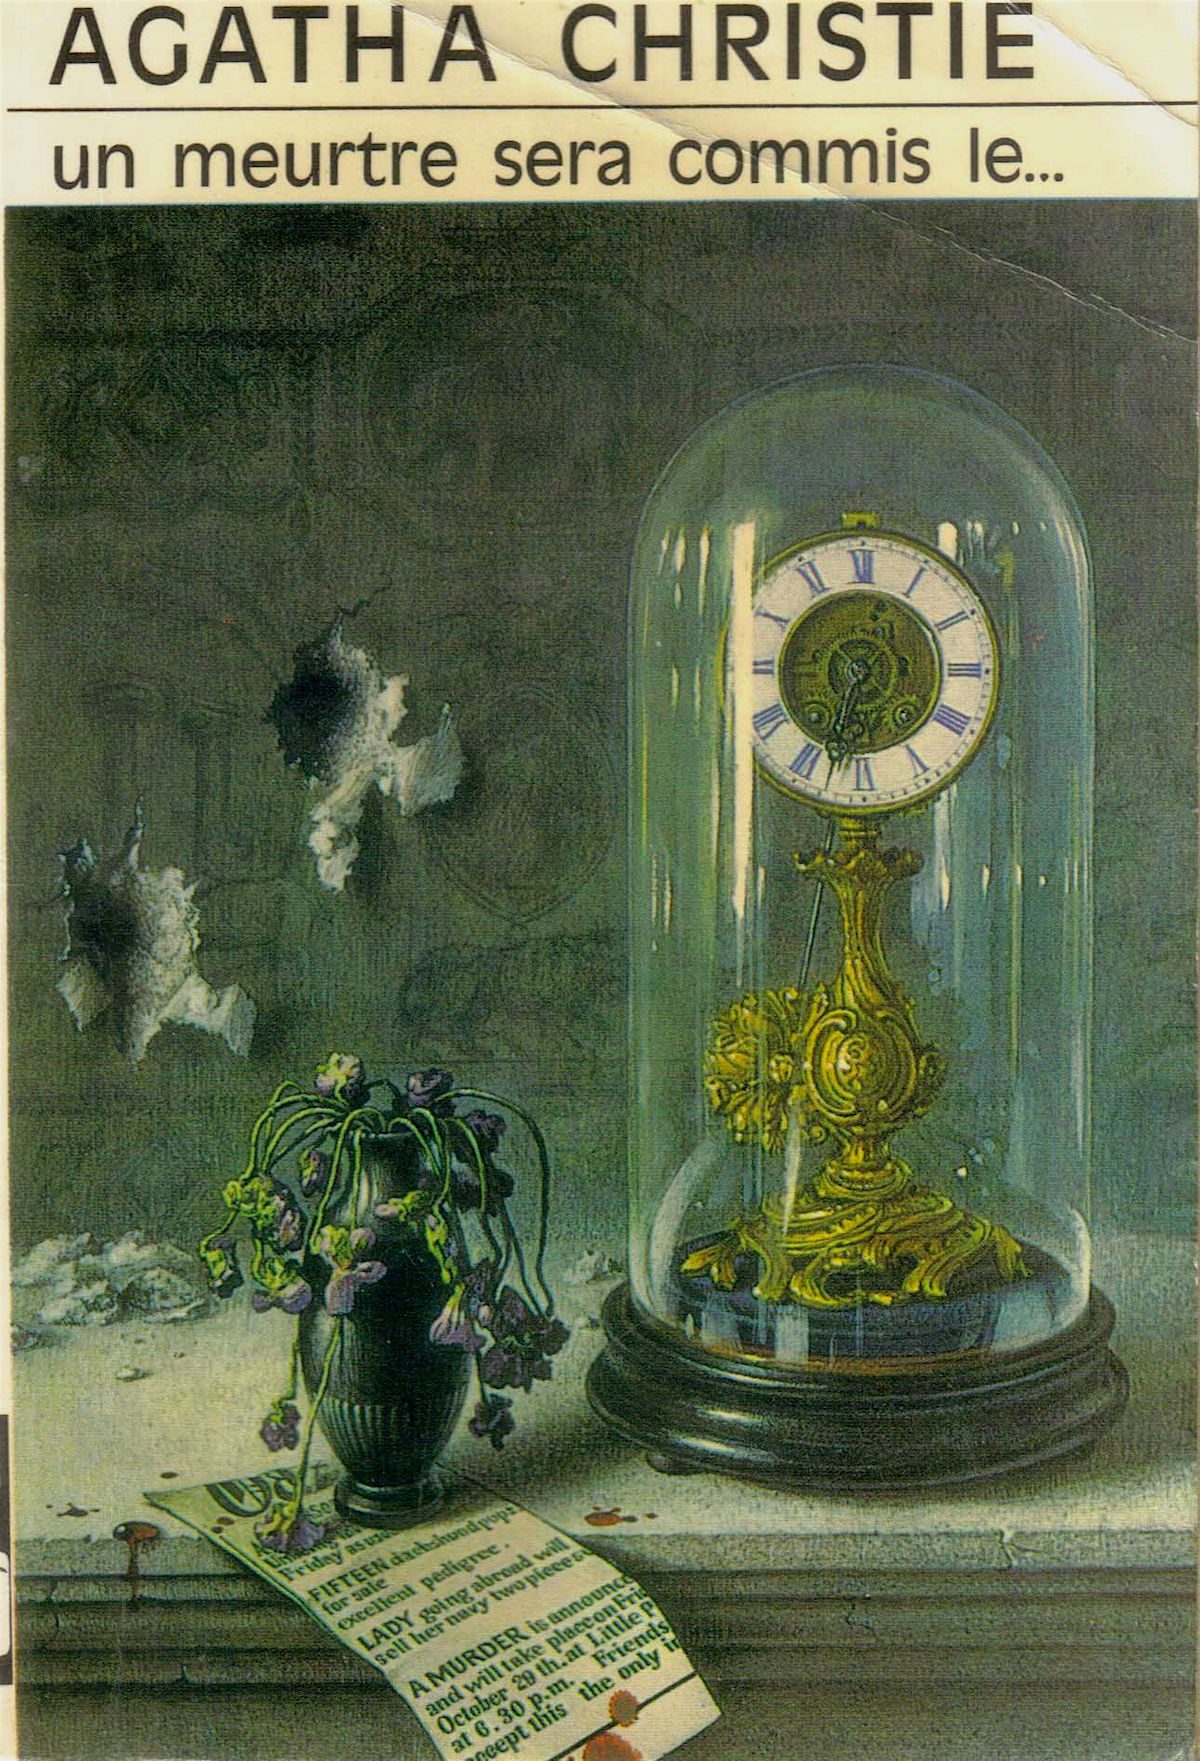 Tom Adams, Agatha Christie, original cover